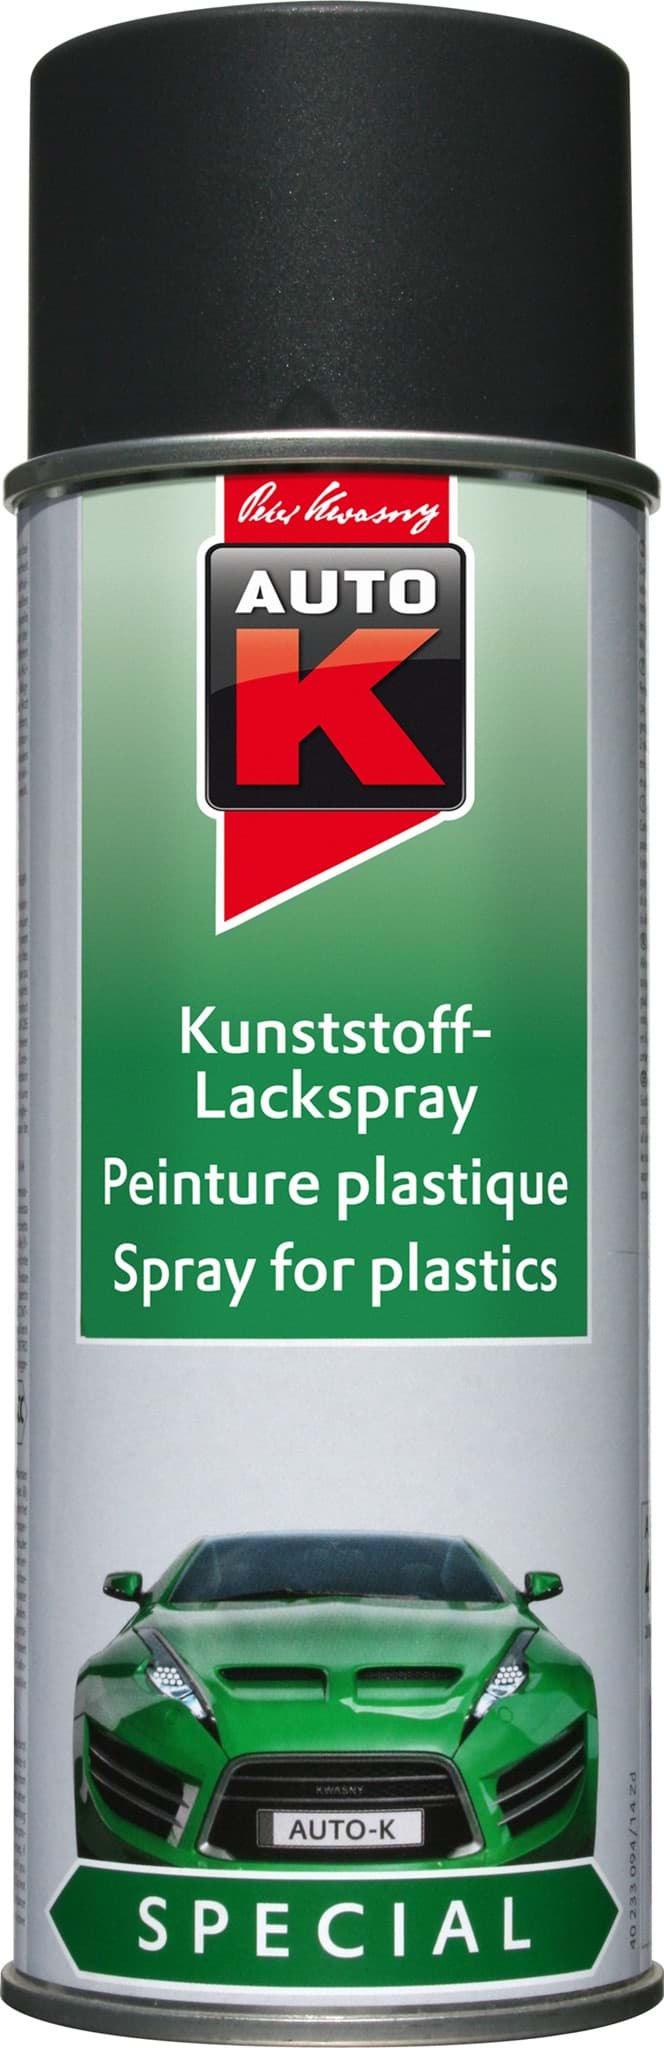 Picture of Kunststoff Lackspray anthrazit von AutoK